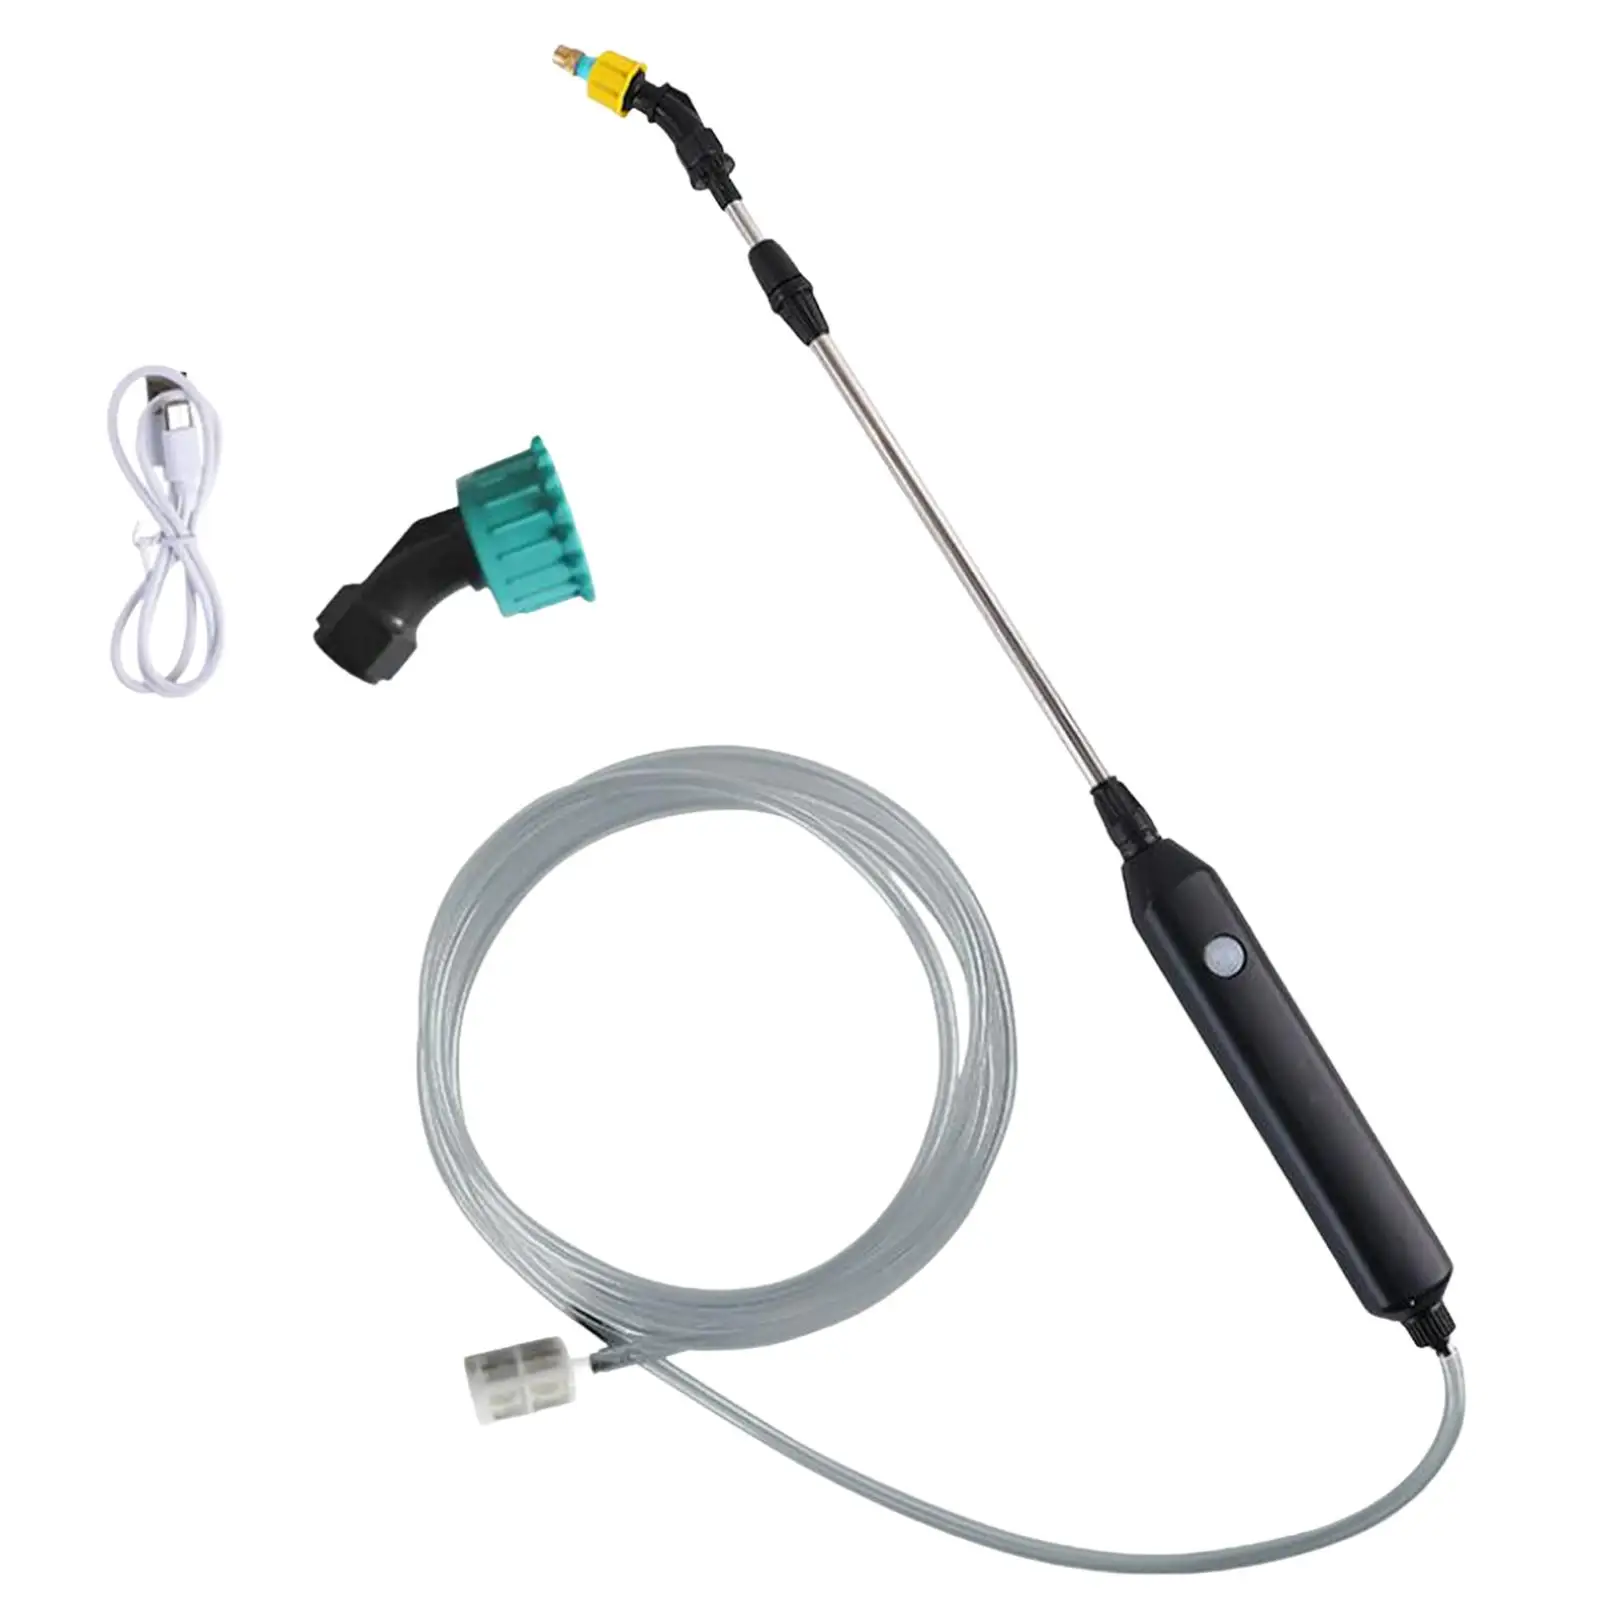 Electric Gardening Sprayer Rechargeable Garden Water Jet for Gardening Watering